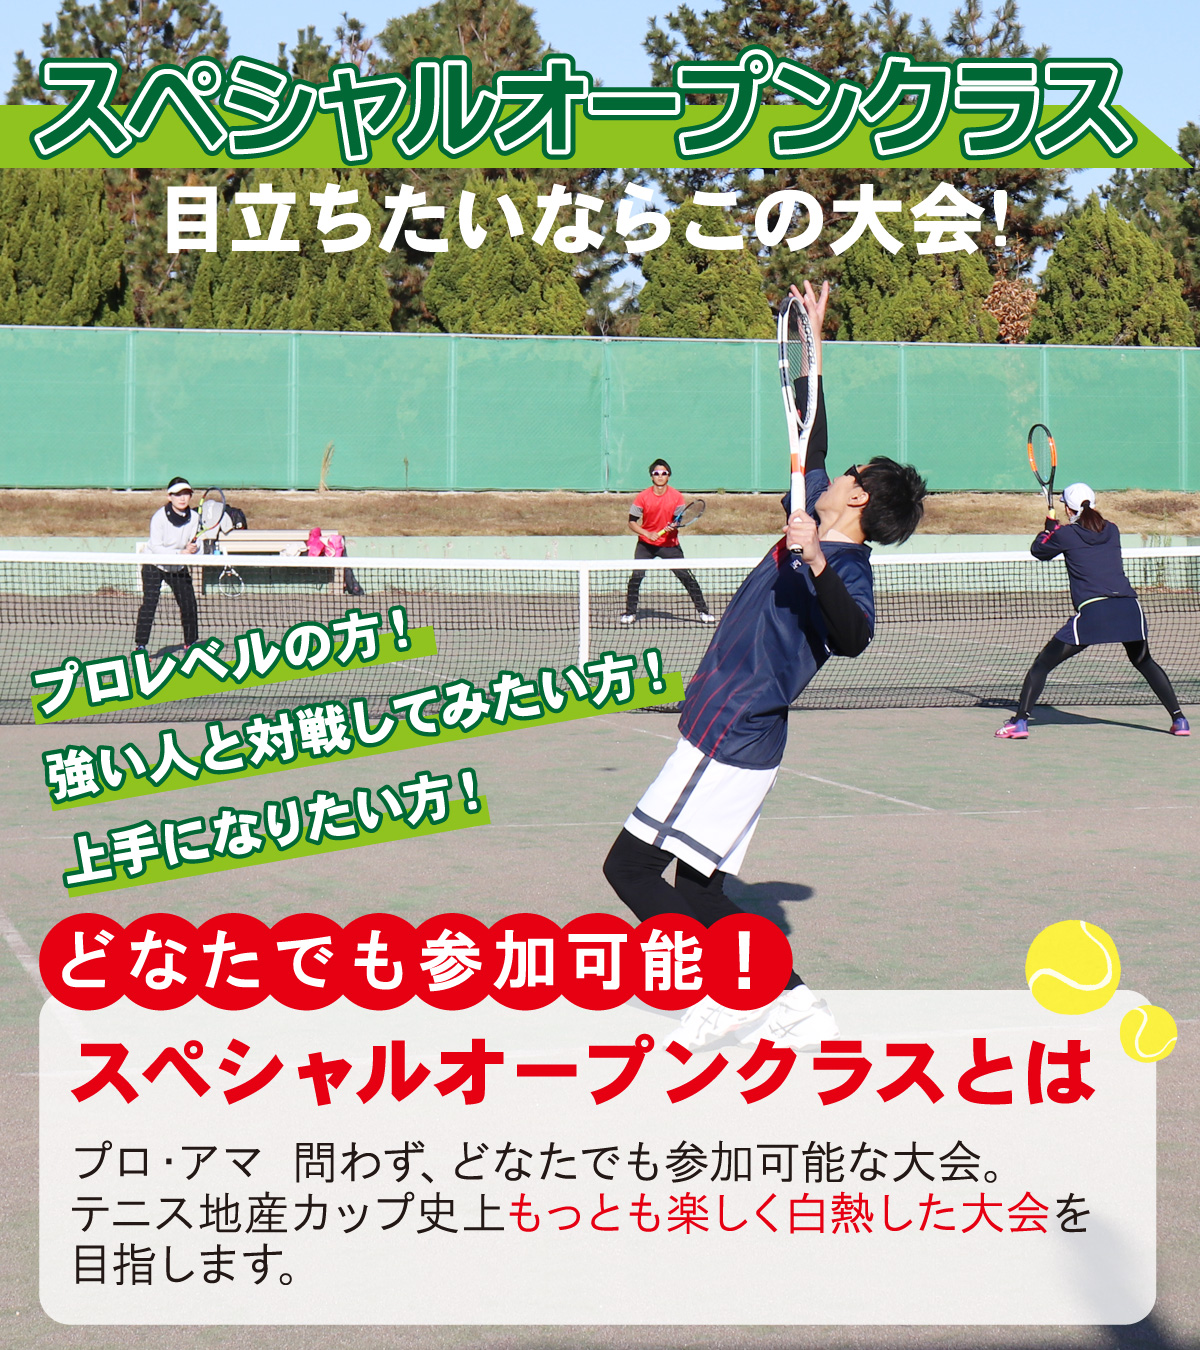 テニス地産カップ スペシャルオープンクラス 兵庫県各地の特産物とふれあうテニス大会 テニス地産カップ